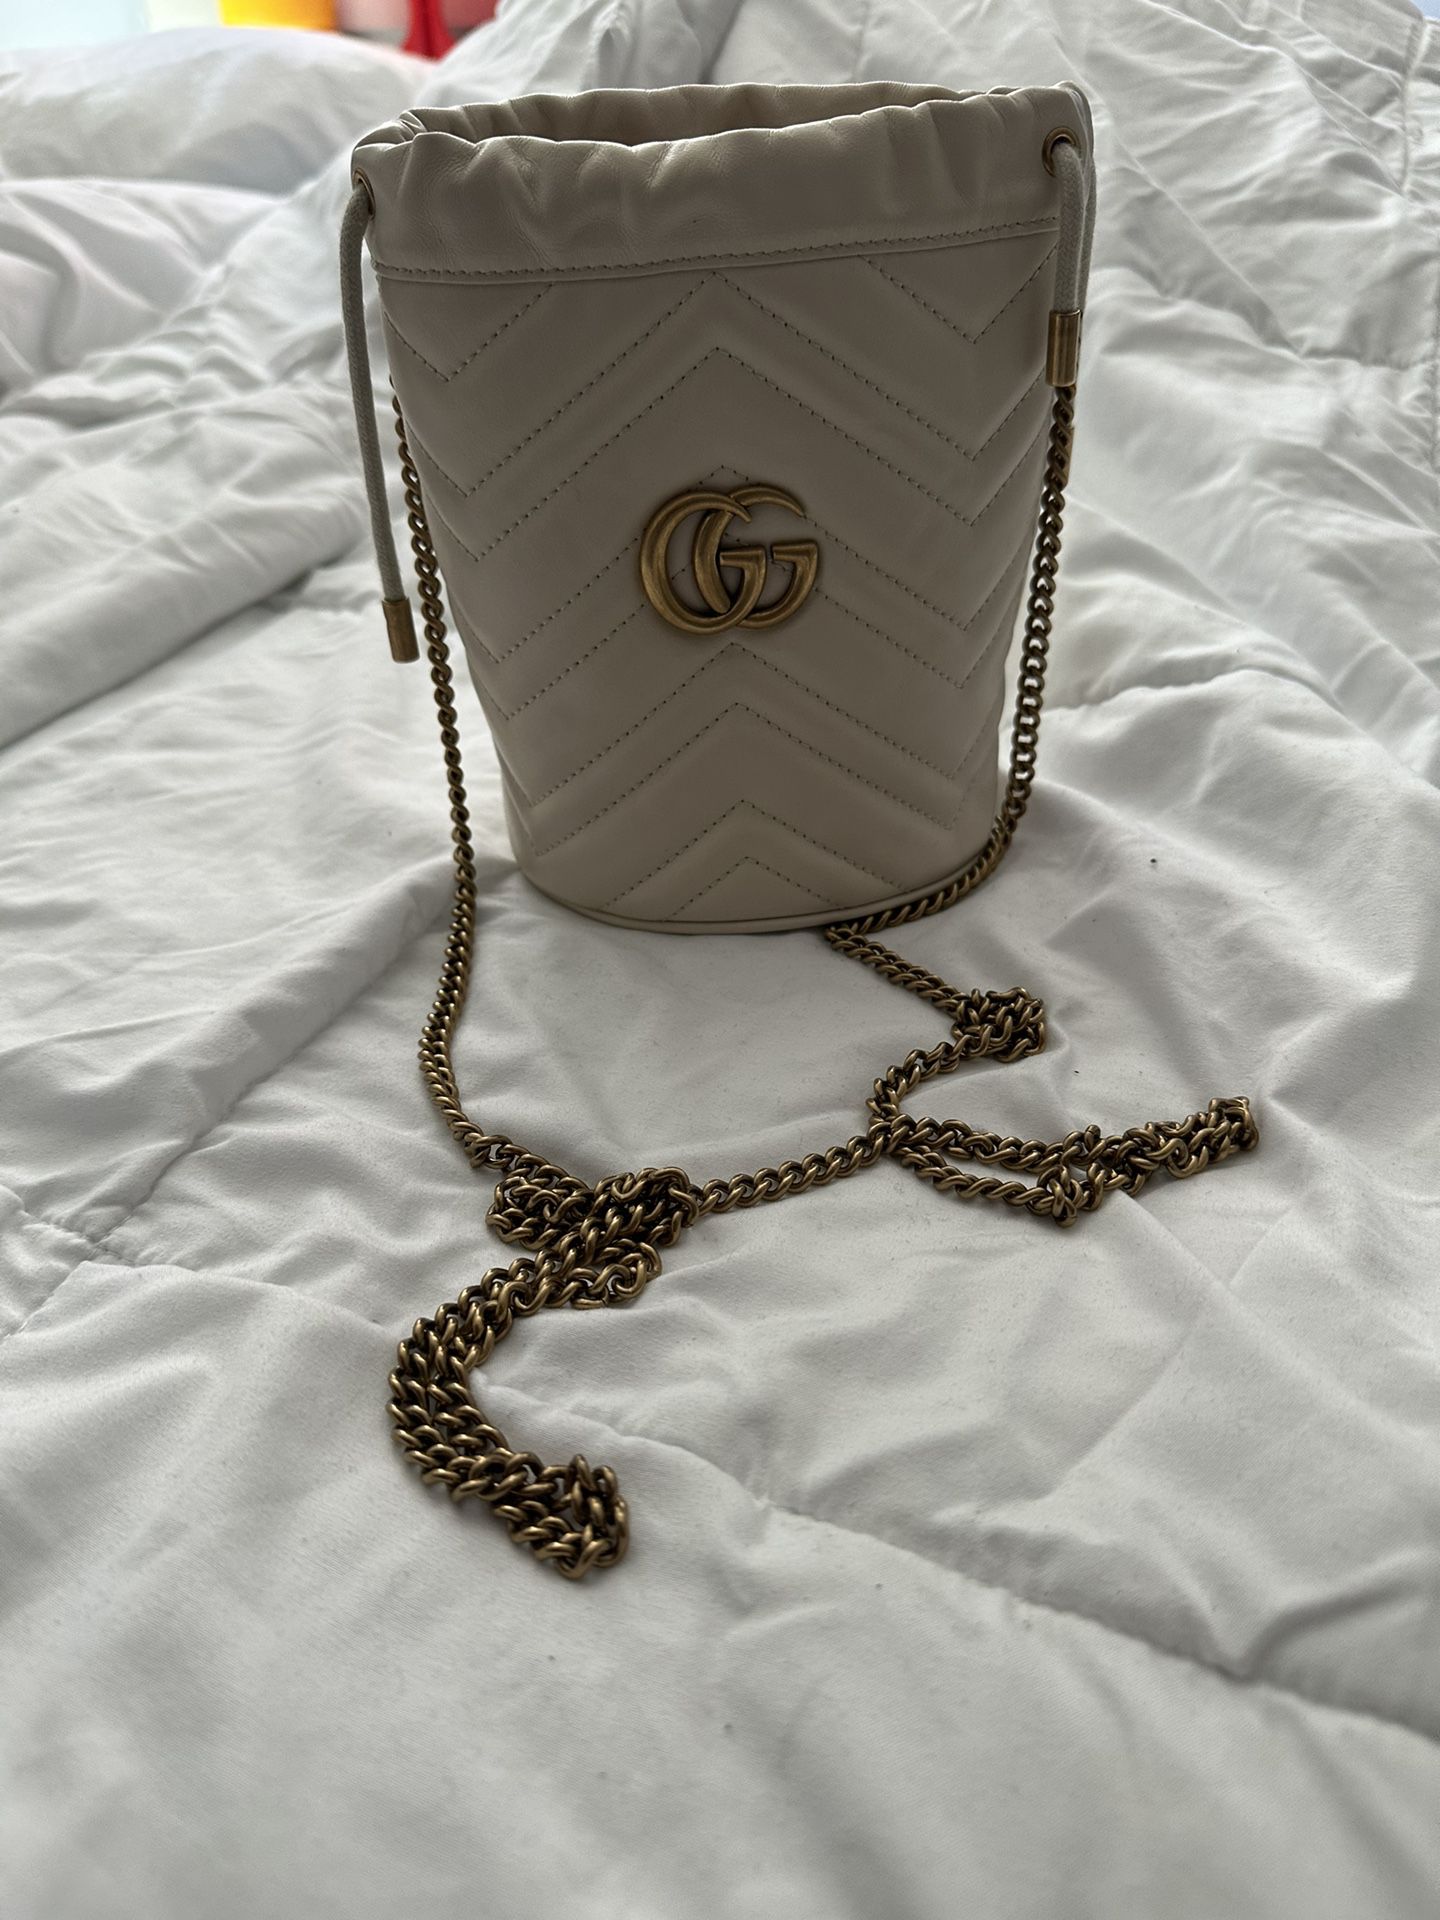 Gucci Bucket Bag 